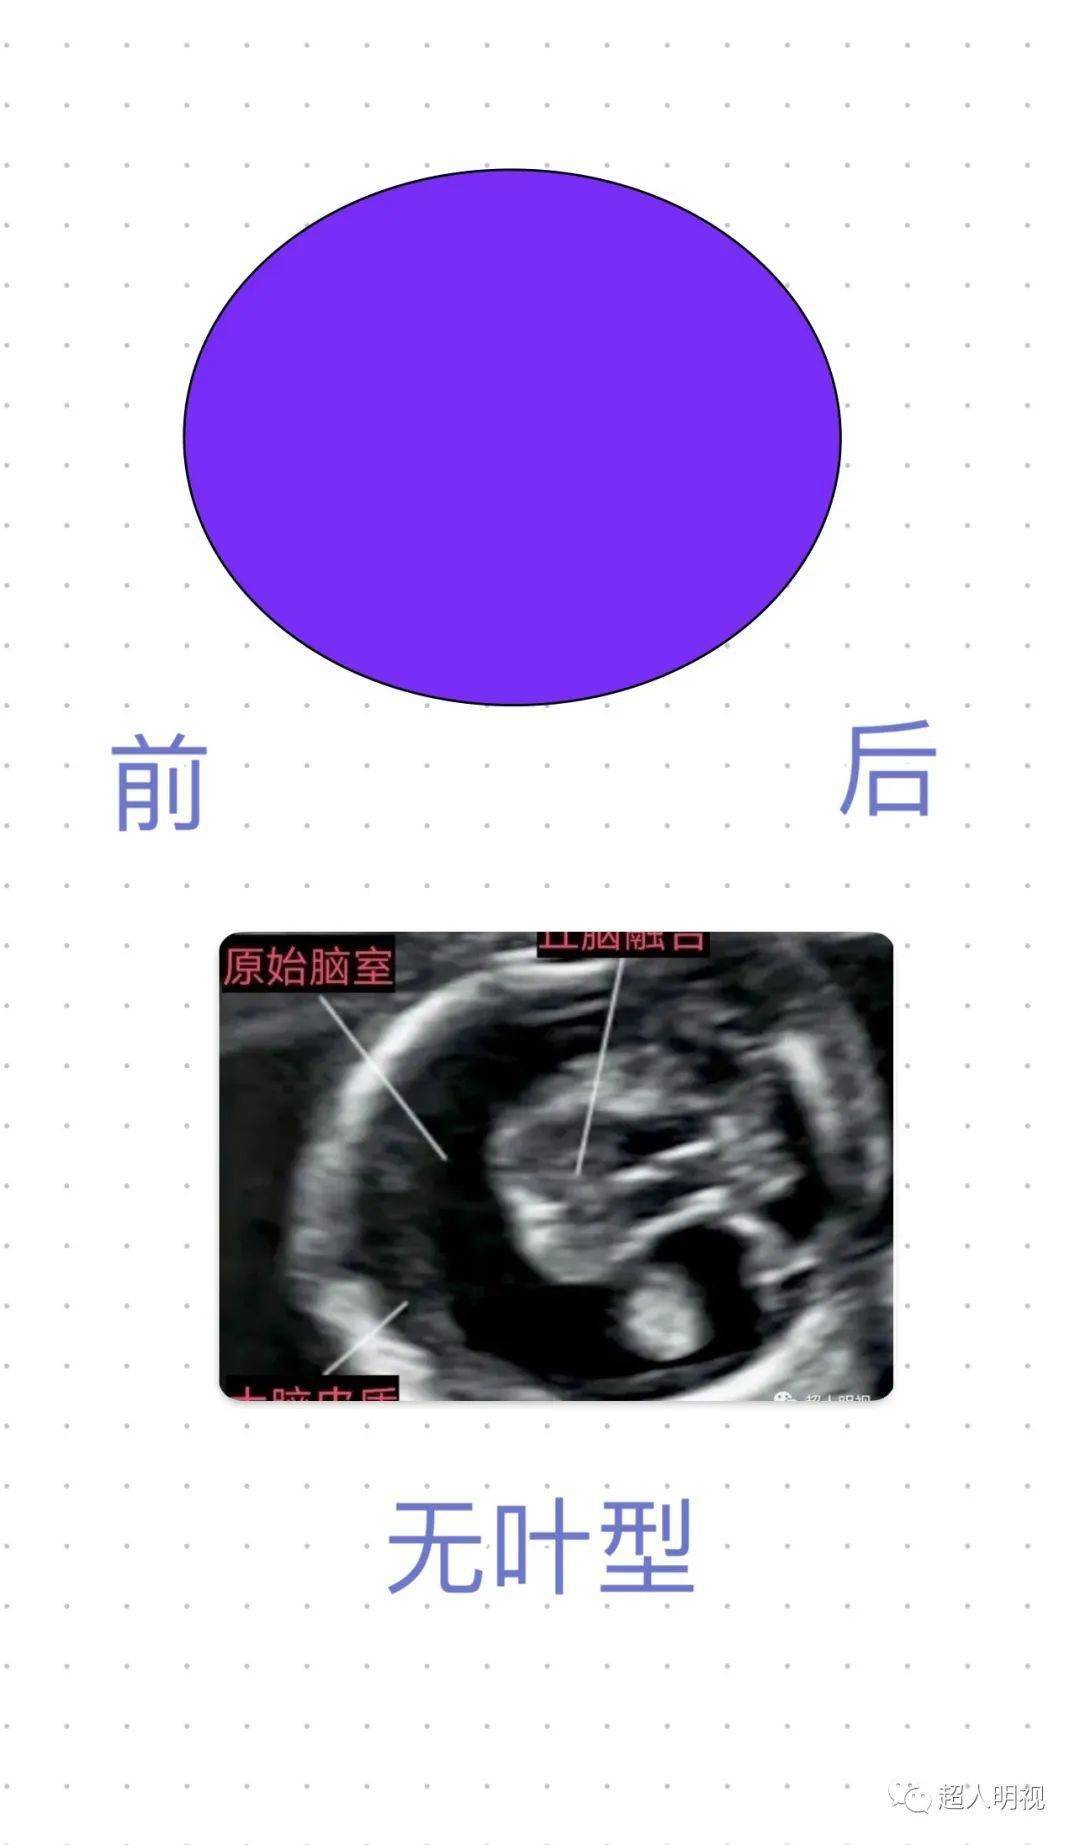 胎儿叶状全前脑误诊图片